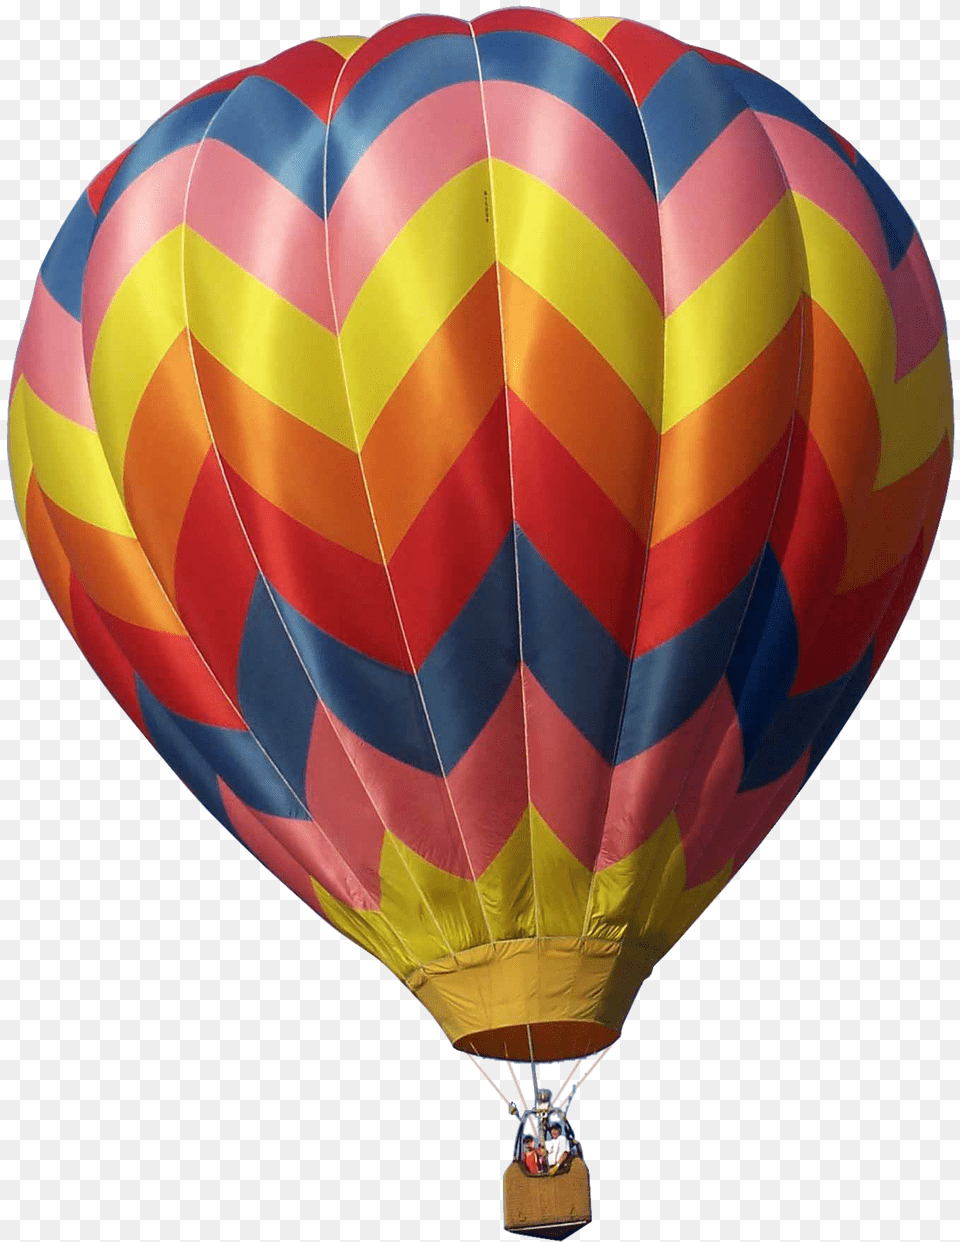 Air Balloon Image Download, Aircraft, Hot Air Balloon, Transportation, Vehicle Free Transparent Png